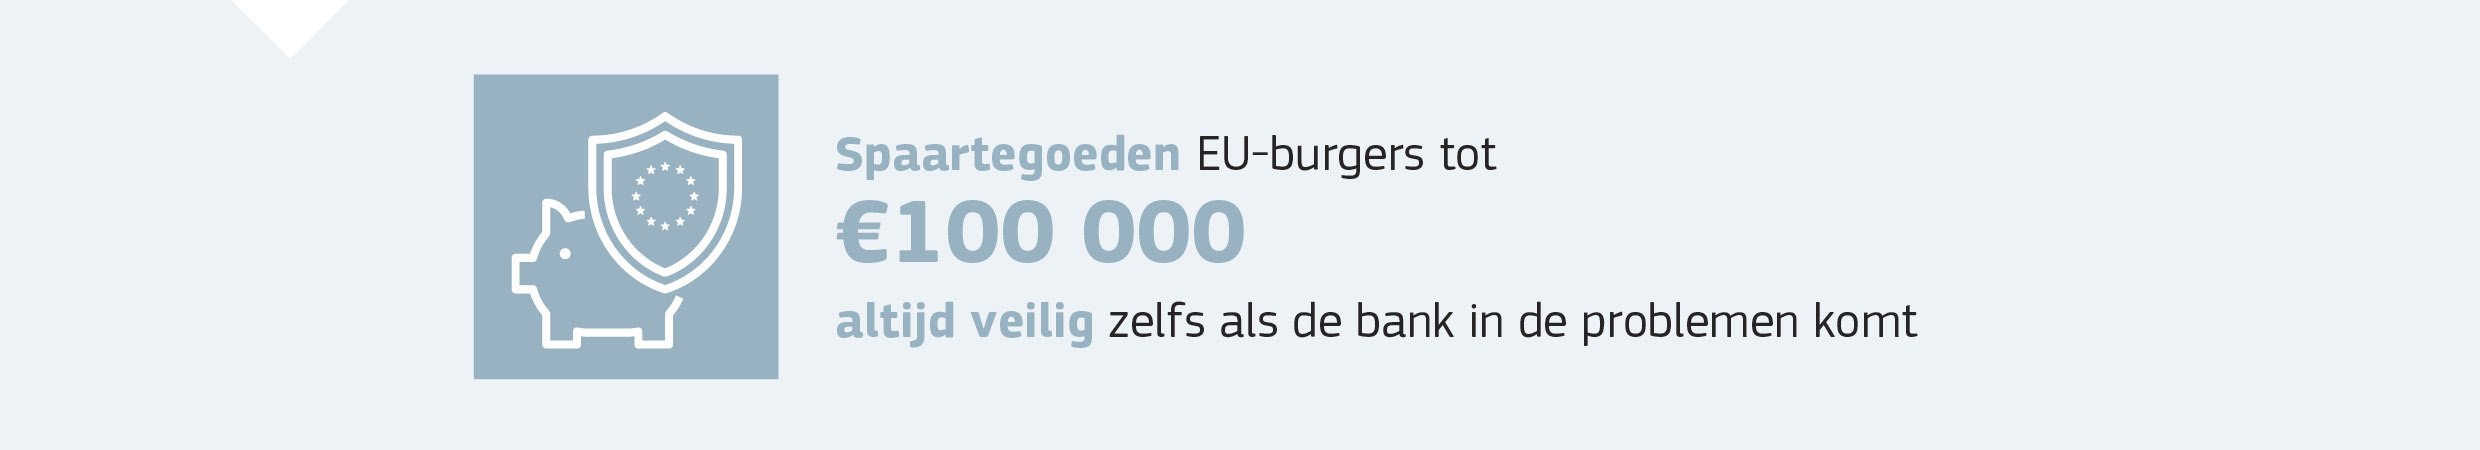 Spaartegoeden EU-burgers tot 100 000 euro altijd veilig, zelfs als de bank in de problemen komt.